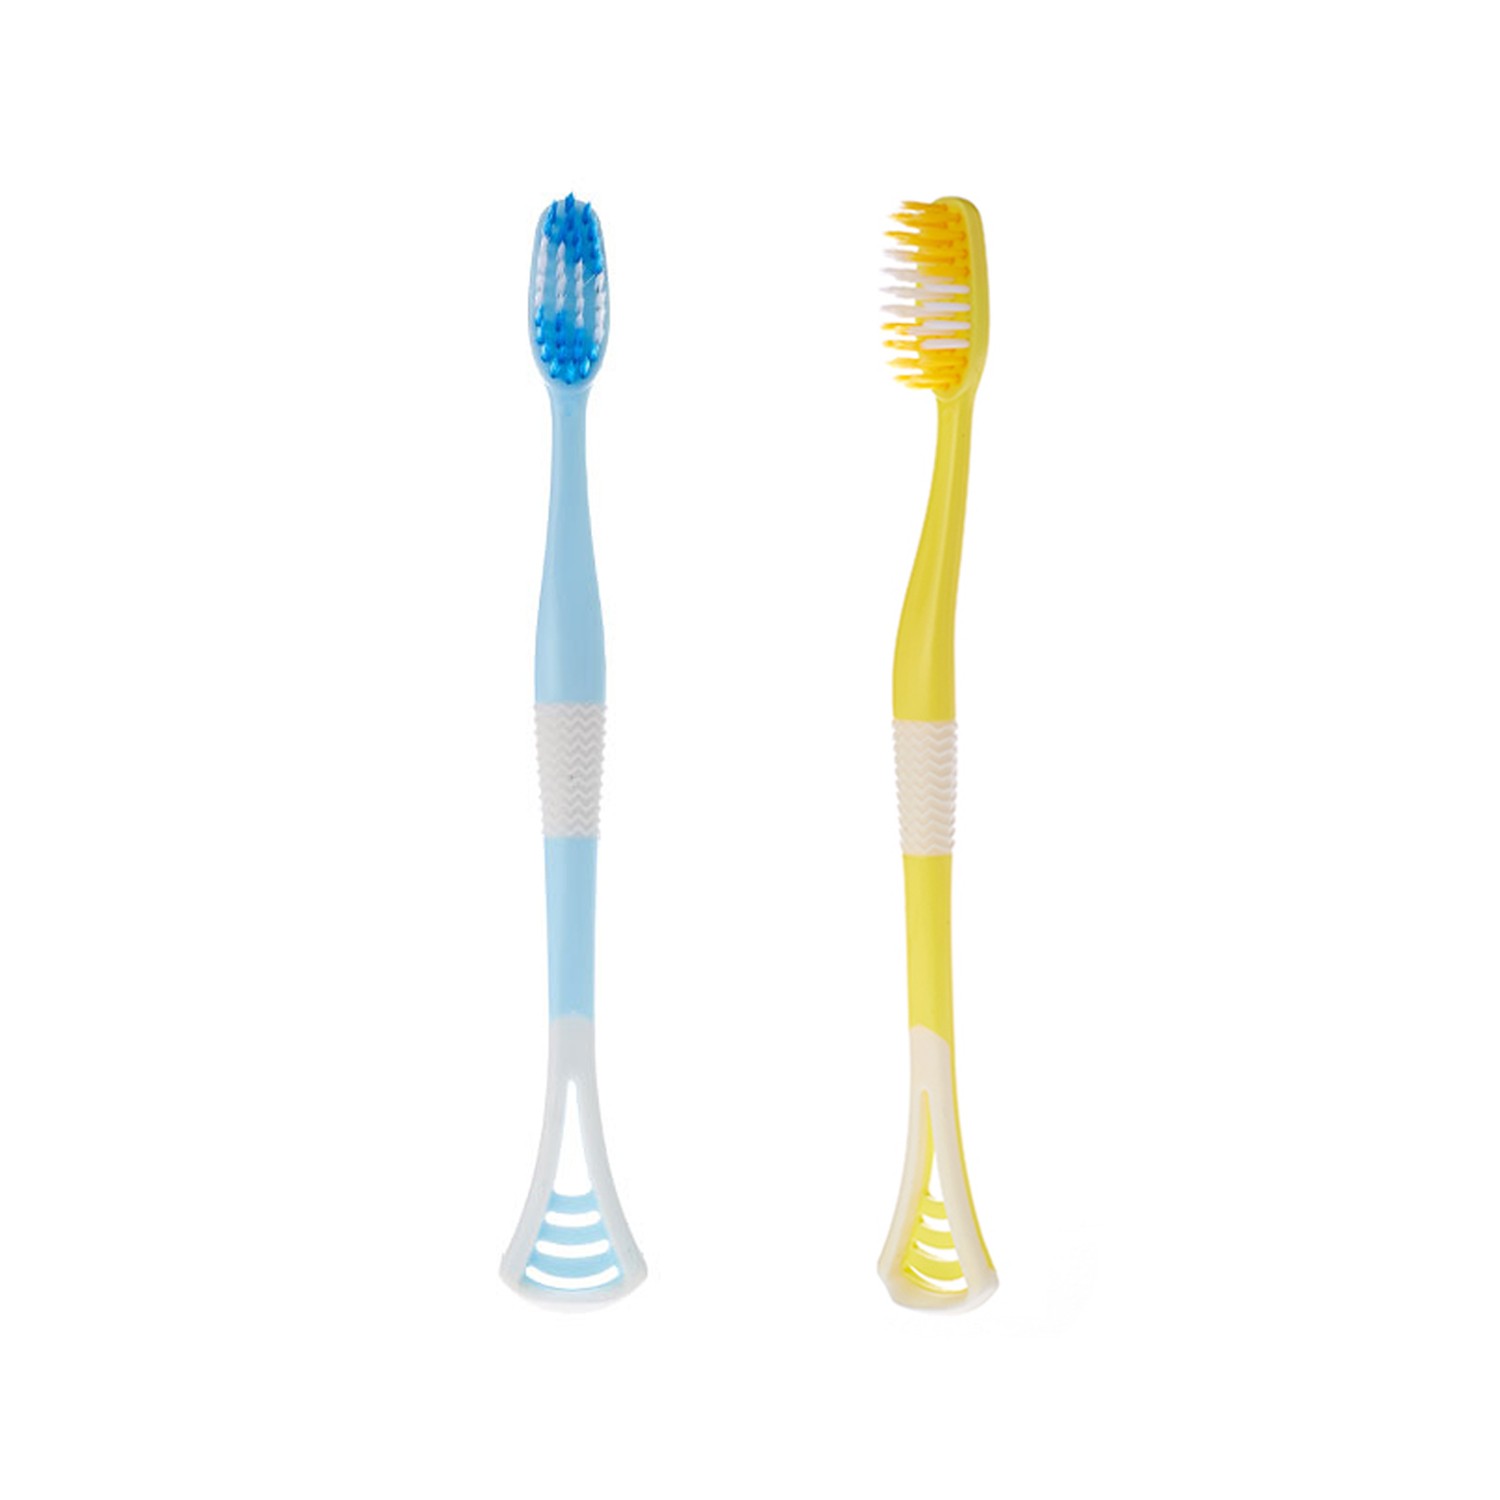 MK Toothbrush 23